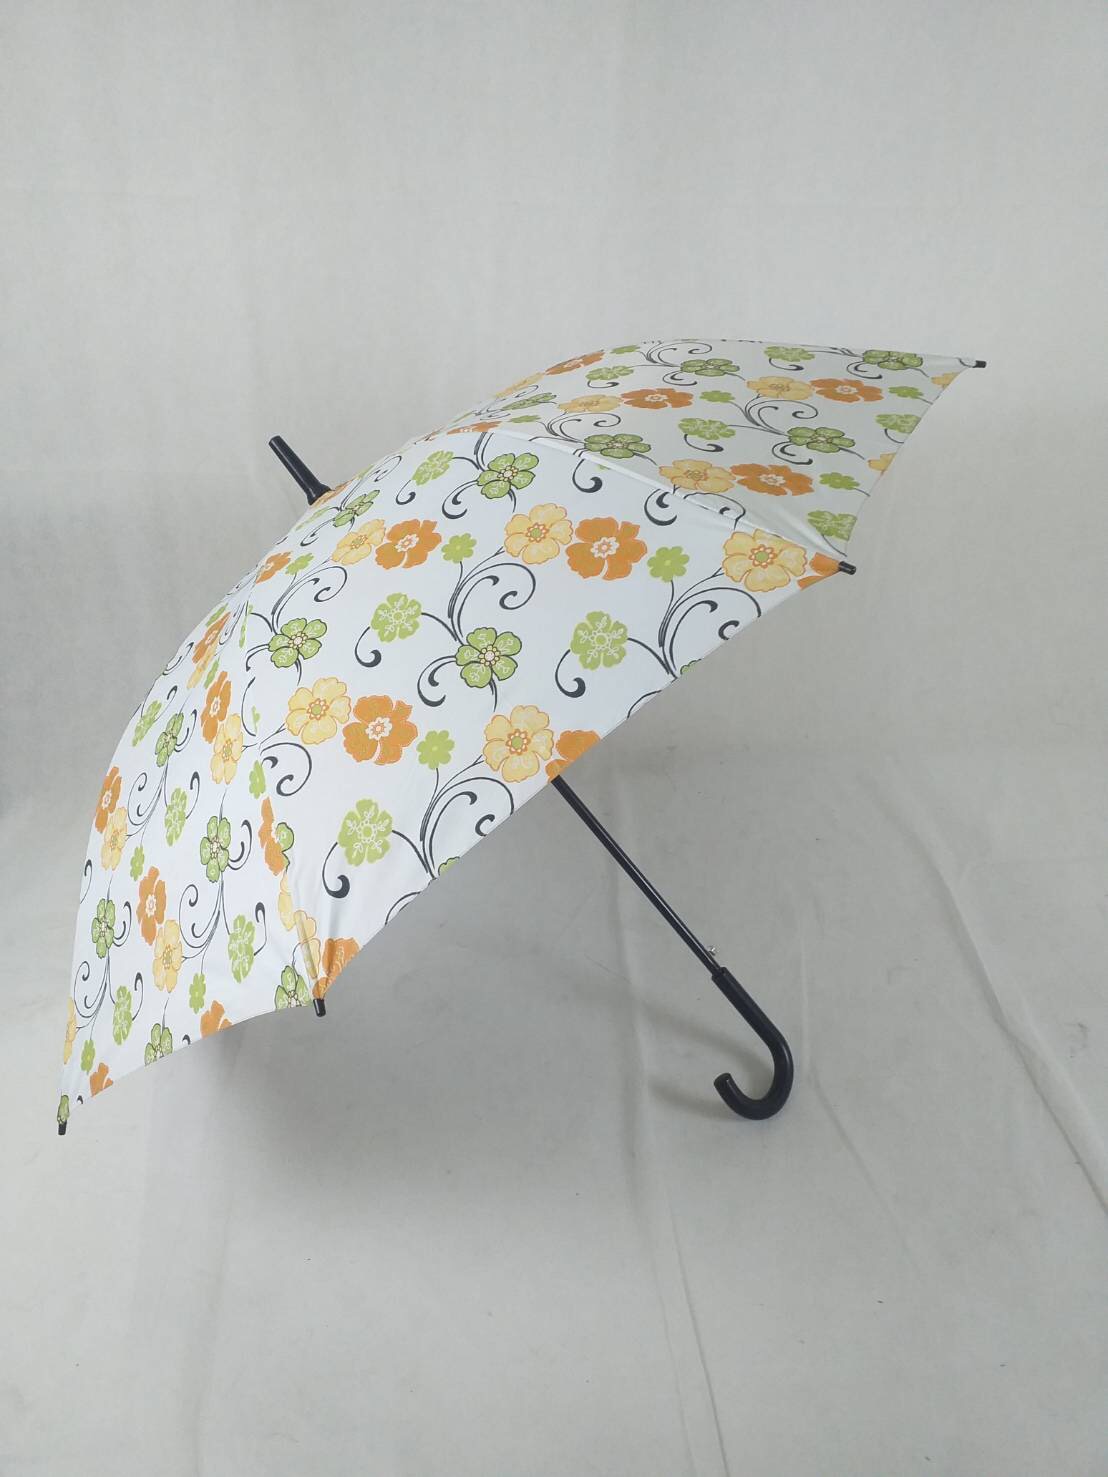 ร่มกอล์ฟ ร่มคันใหญ่ เปิดออโต้ รหัส28142-4-1ด้ามงอ ผ้าลายดอก กันUV ร่มกันแดด กันน้ำ ผลิตในไทย golf umbrella